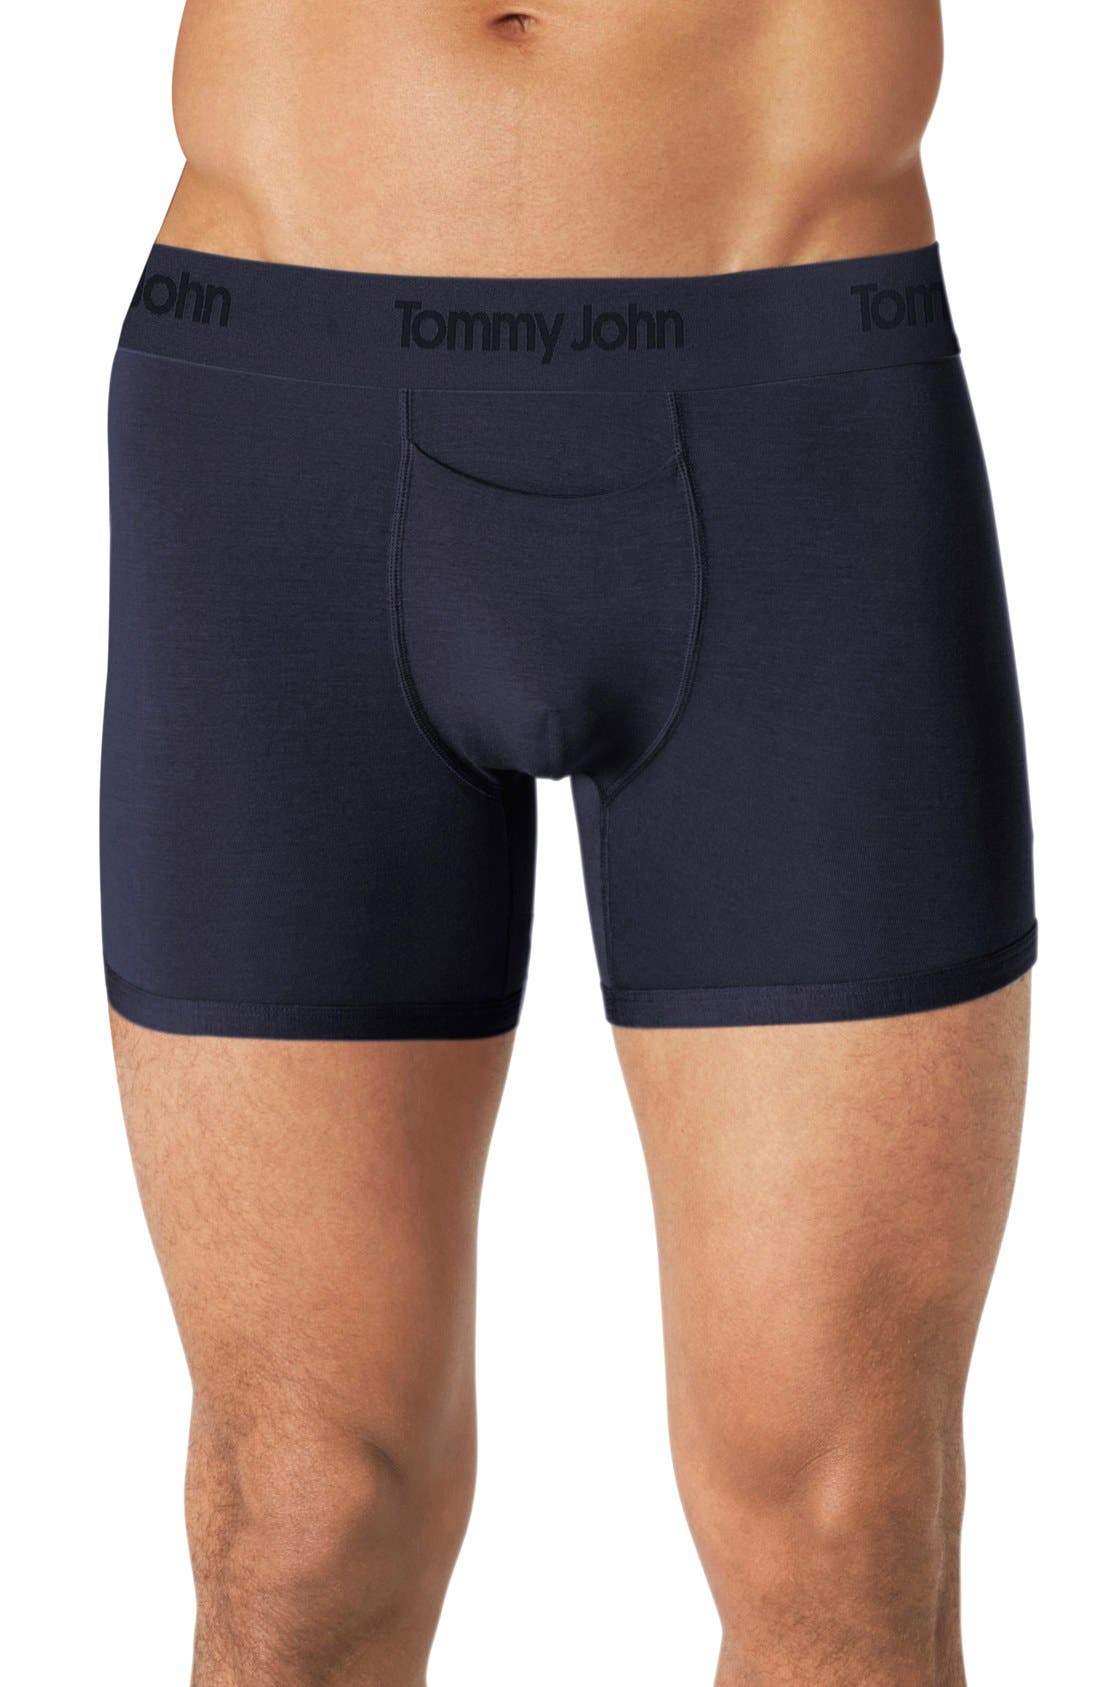 tommy john underwear dillards